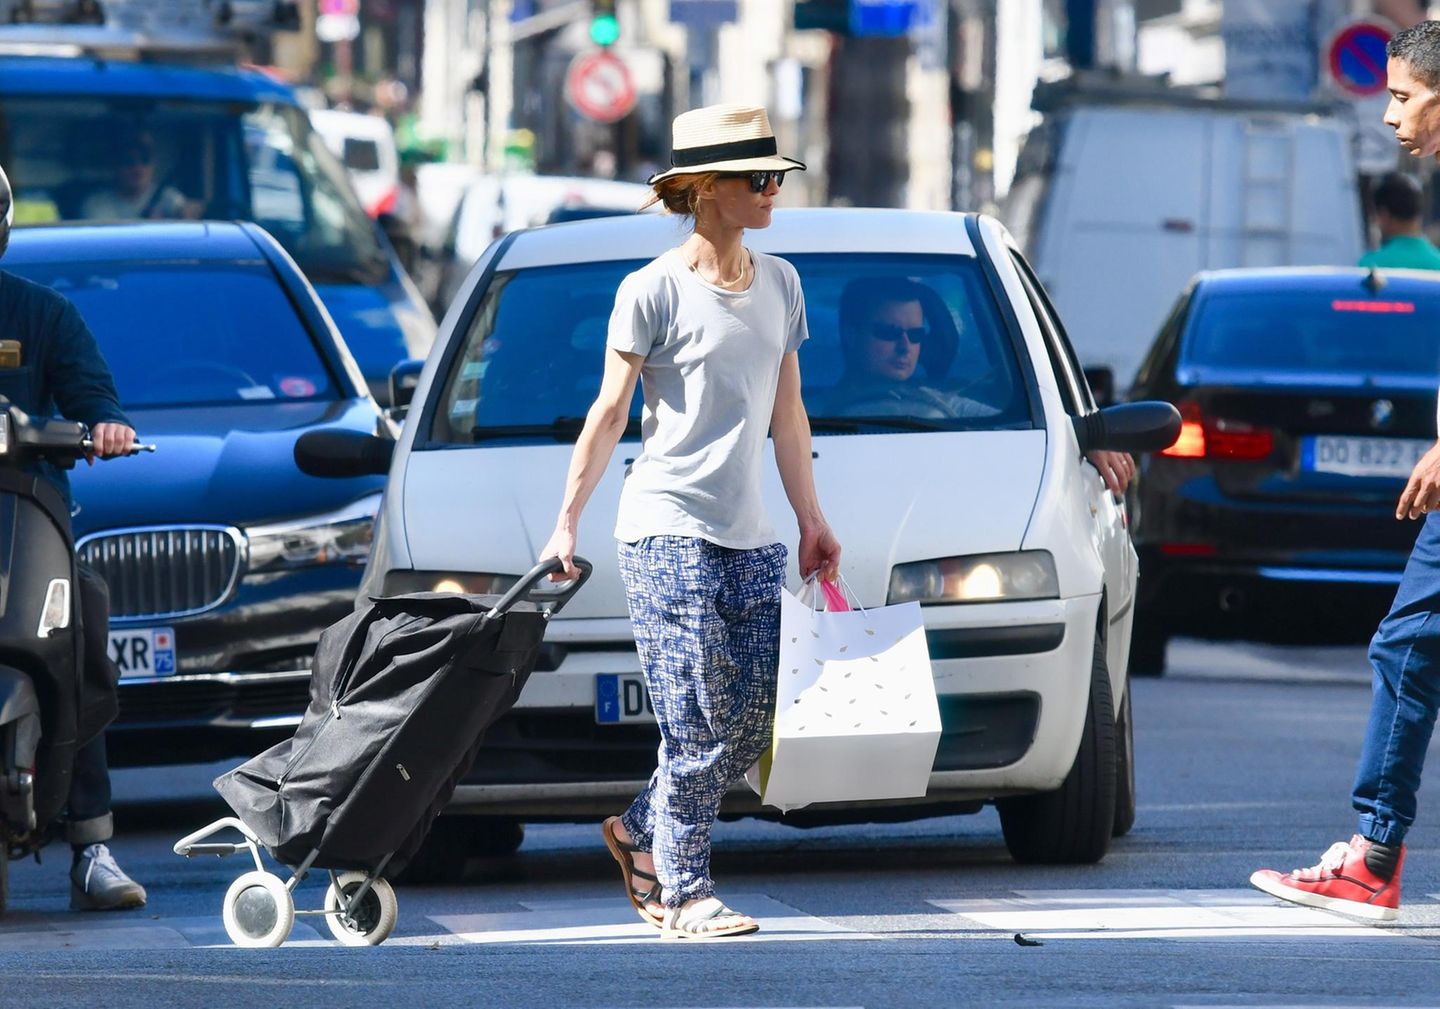 Einen Superstar mit Hackenporsche sieht man auch nicht alle Tage: Die Sängerin und Schauspielerin Vanessa Paradis, Ex-Freundin von Johnny Depp und Mutter seiner beiden Kinder, überquert mit ihrem Einkaufsroller eine Pariser Straße.